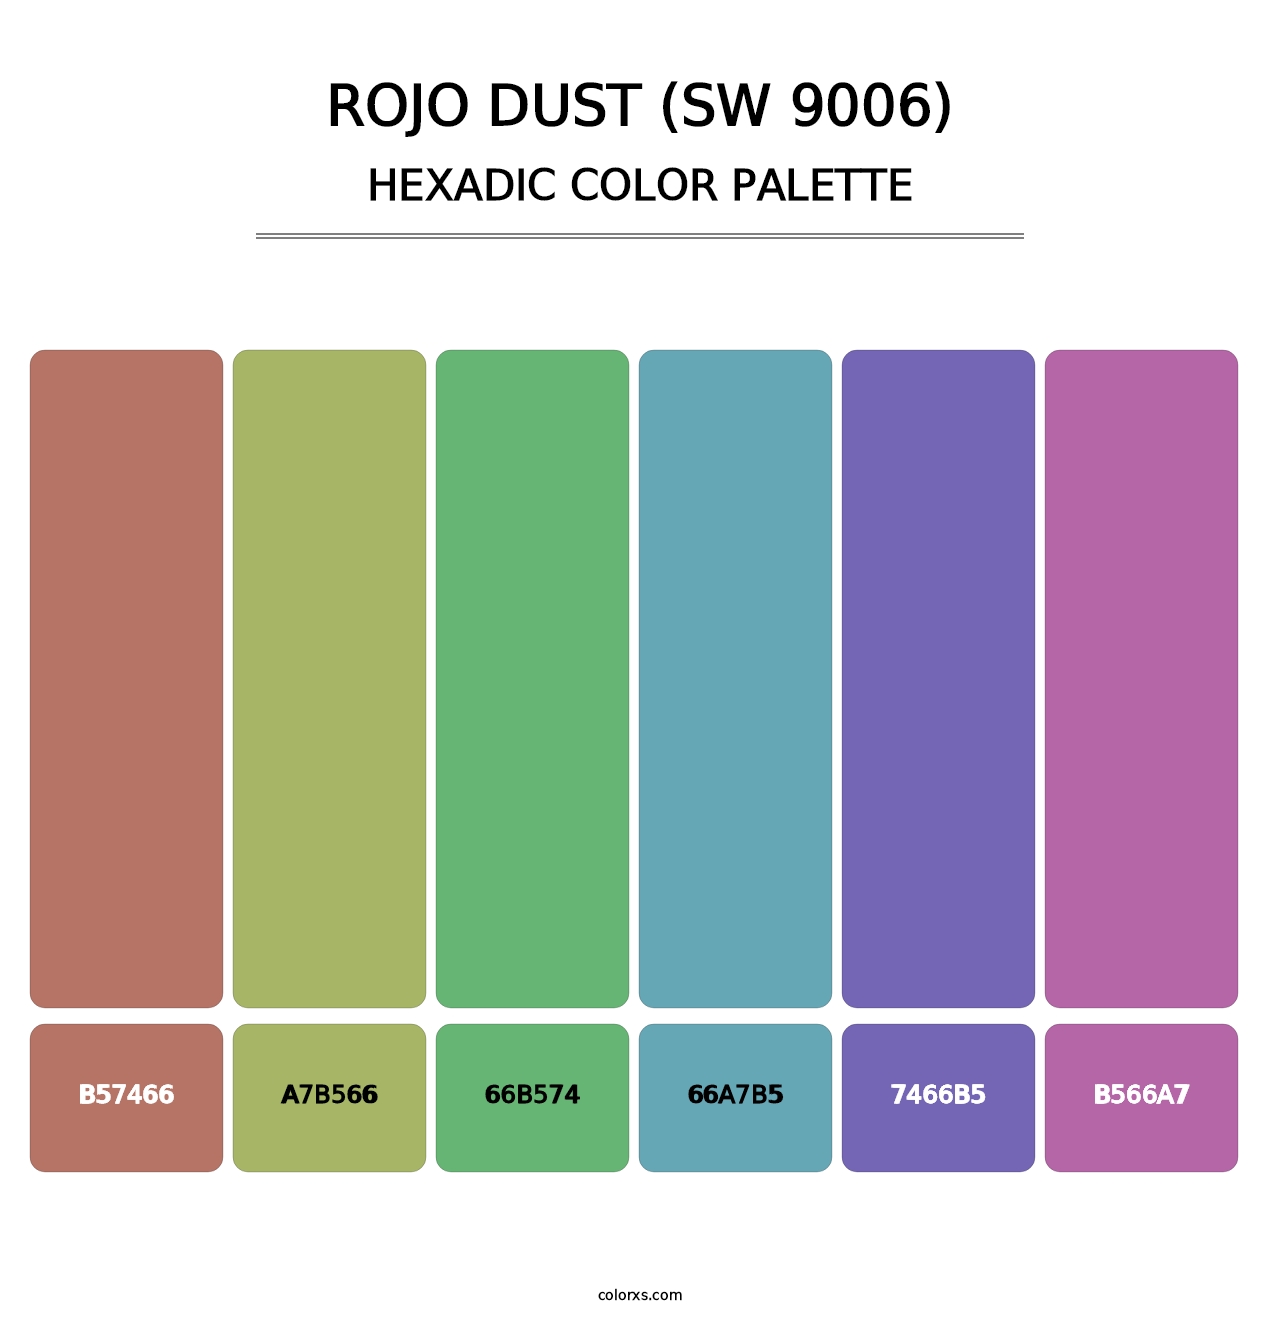 Rojo Dust (SW 9006) - Hexadic Color Palette